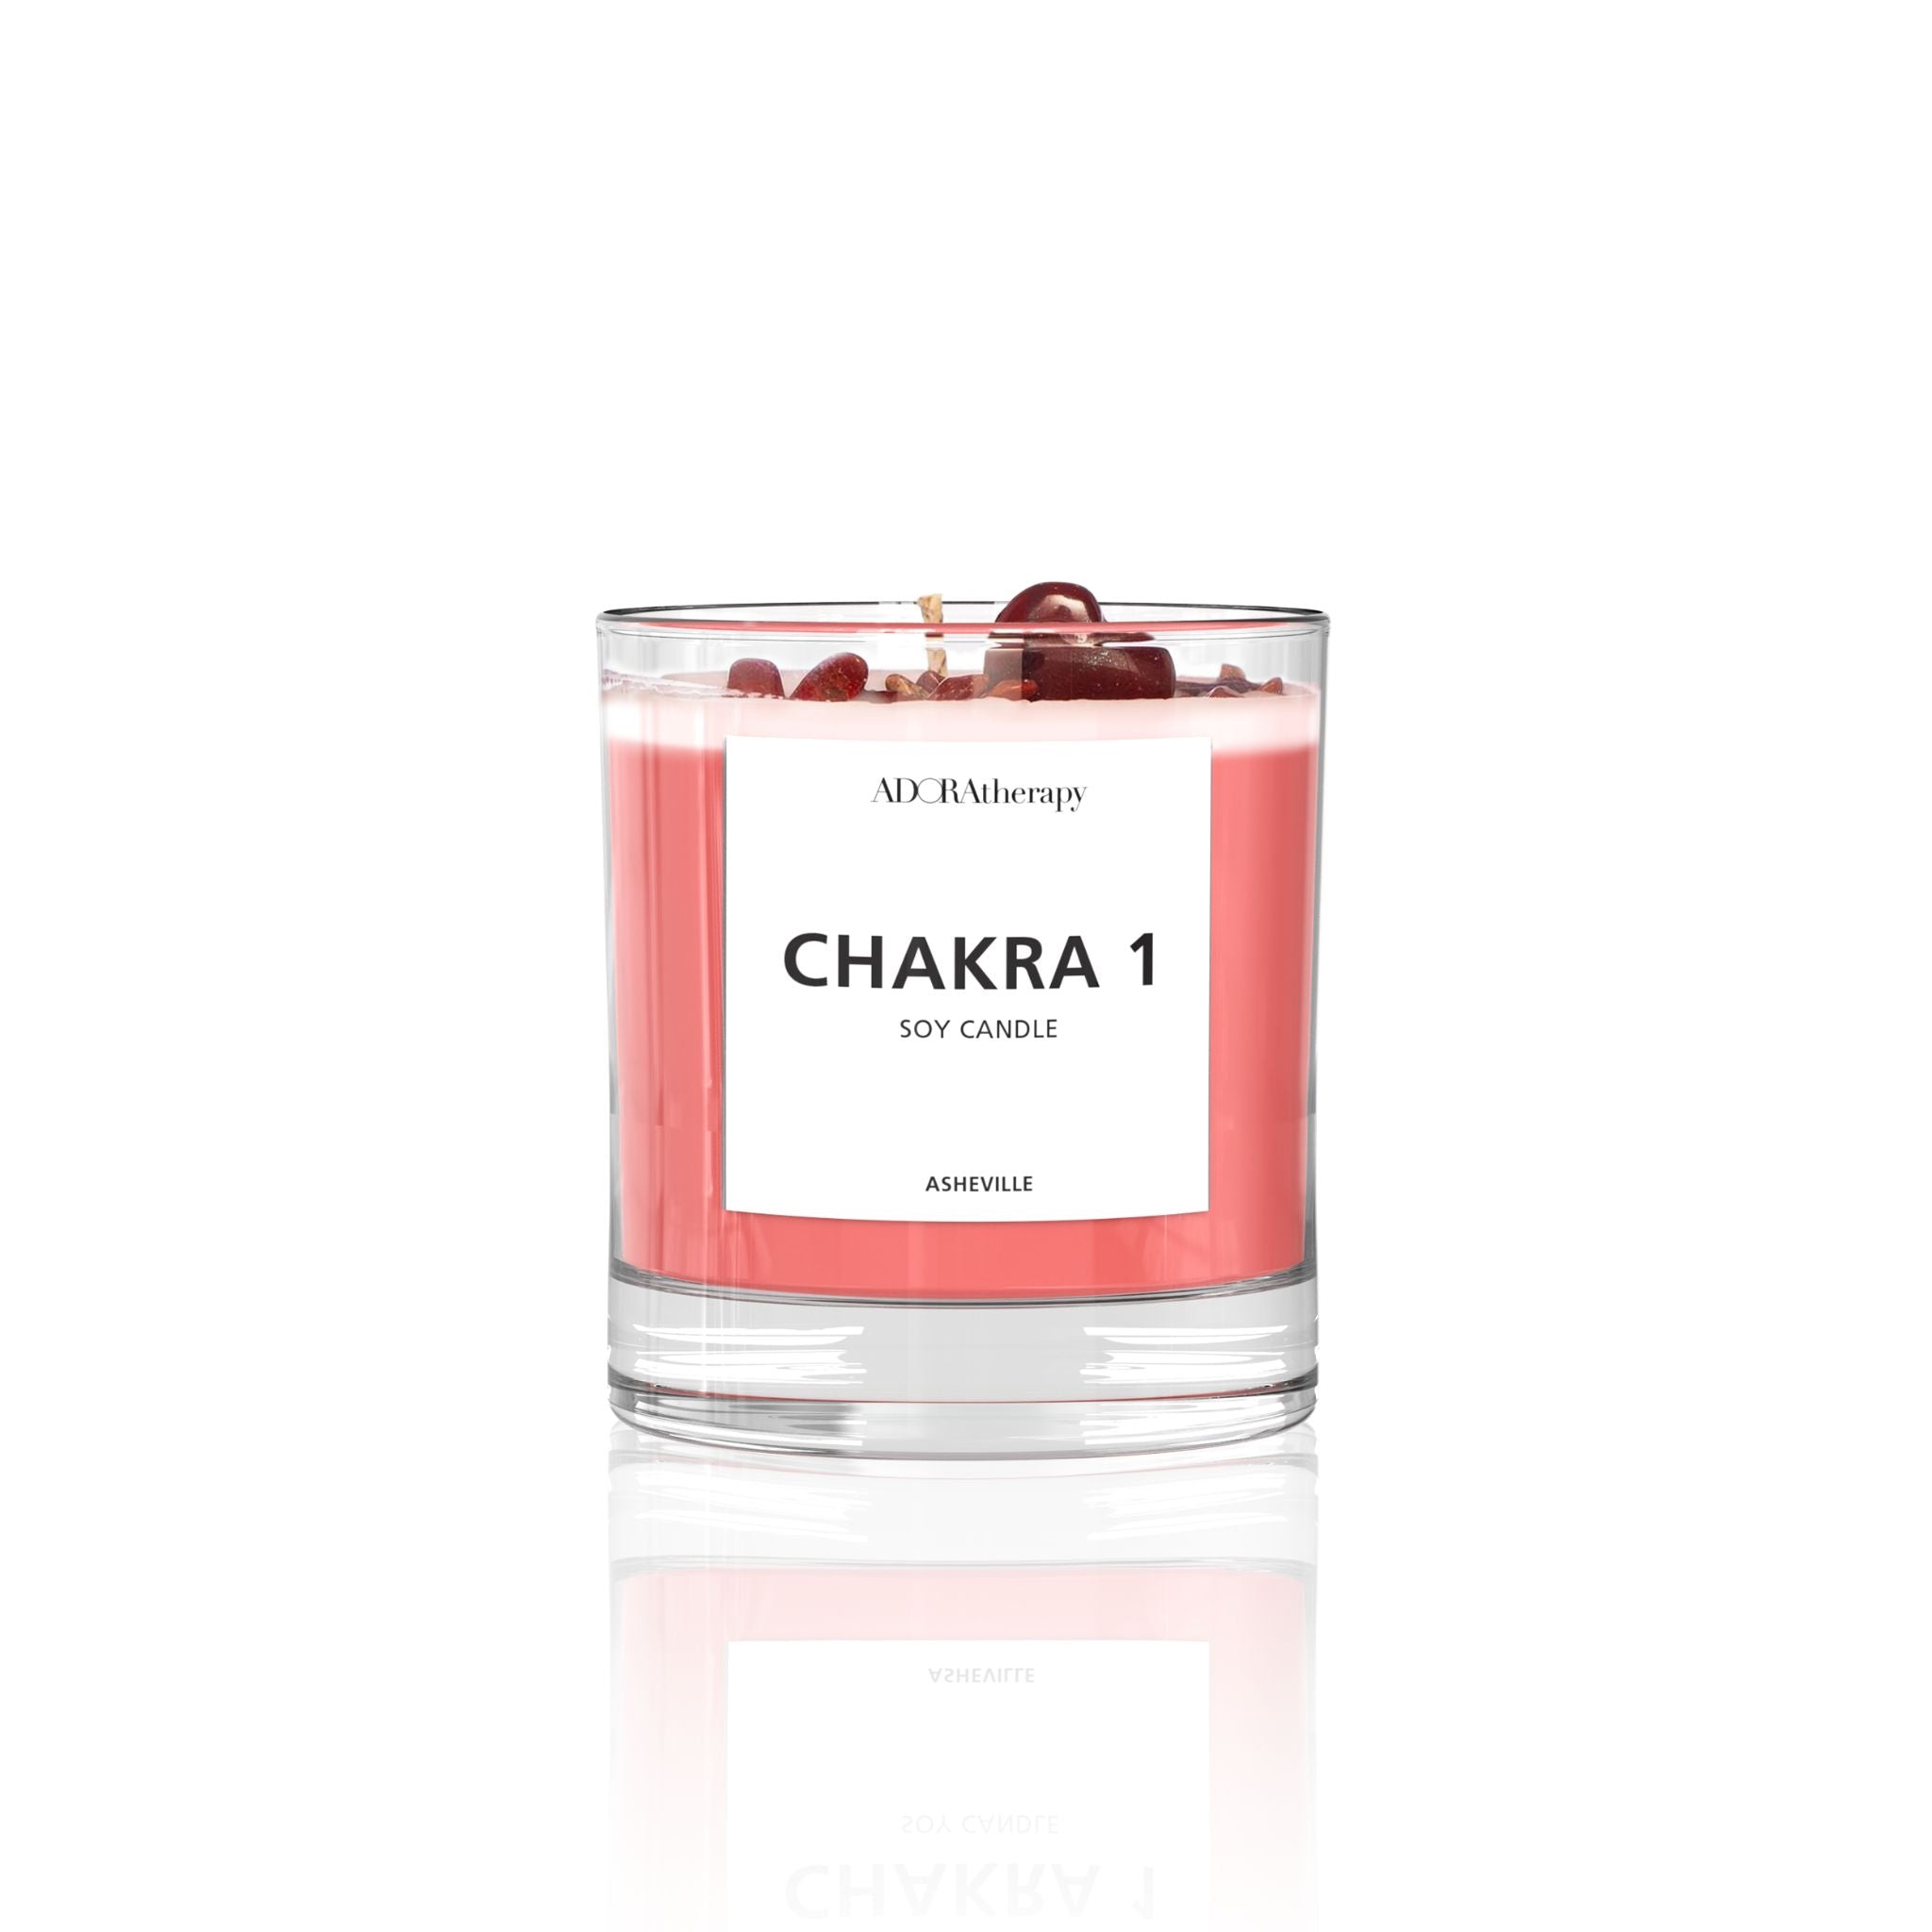 Chakra soft candle